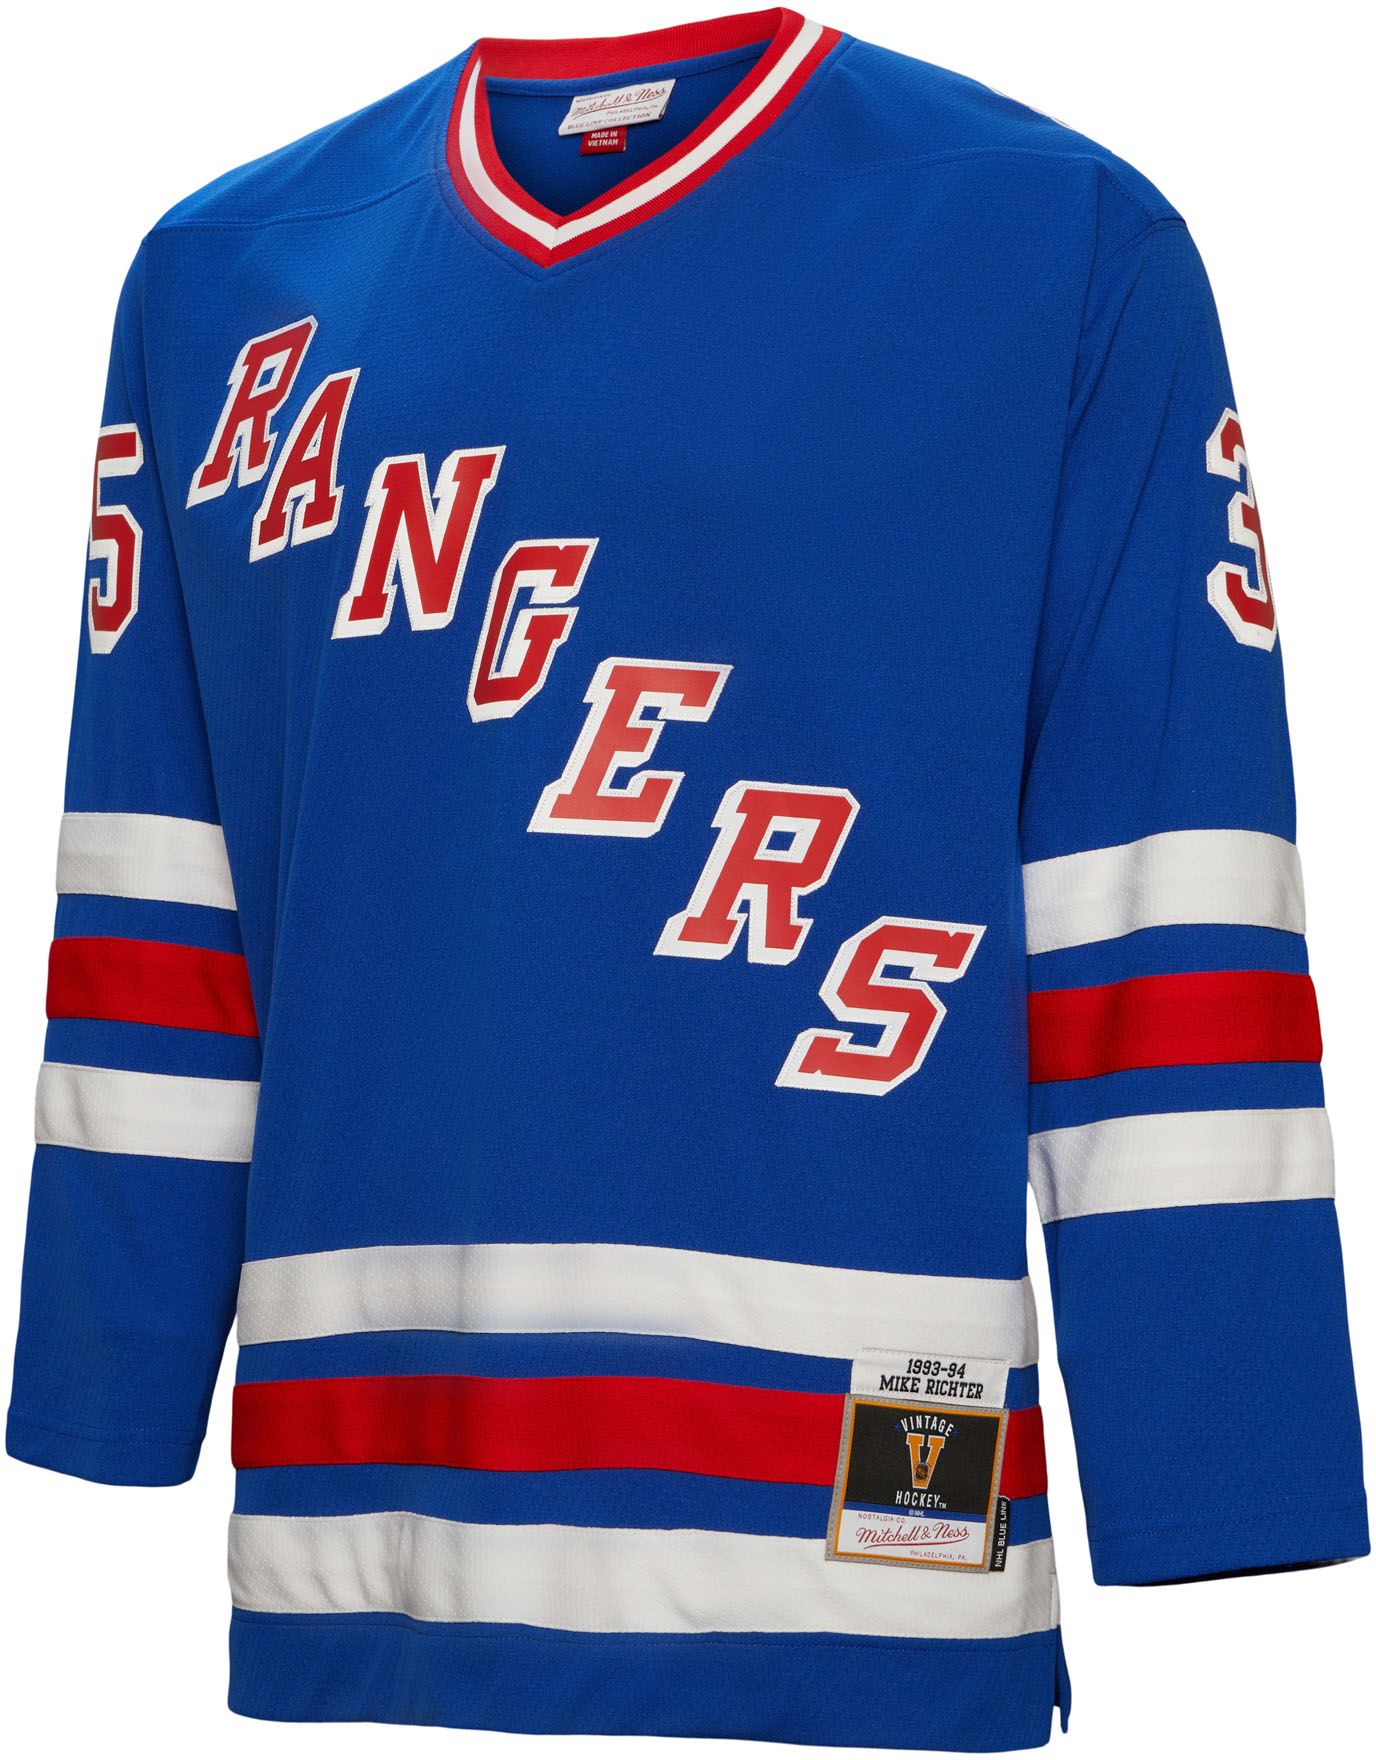 Mike Richter Rangers jersey